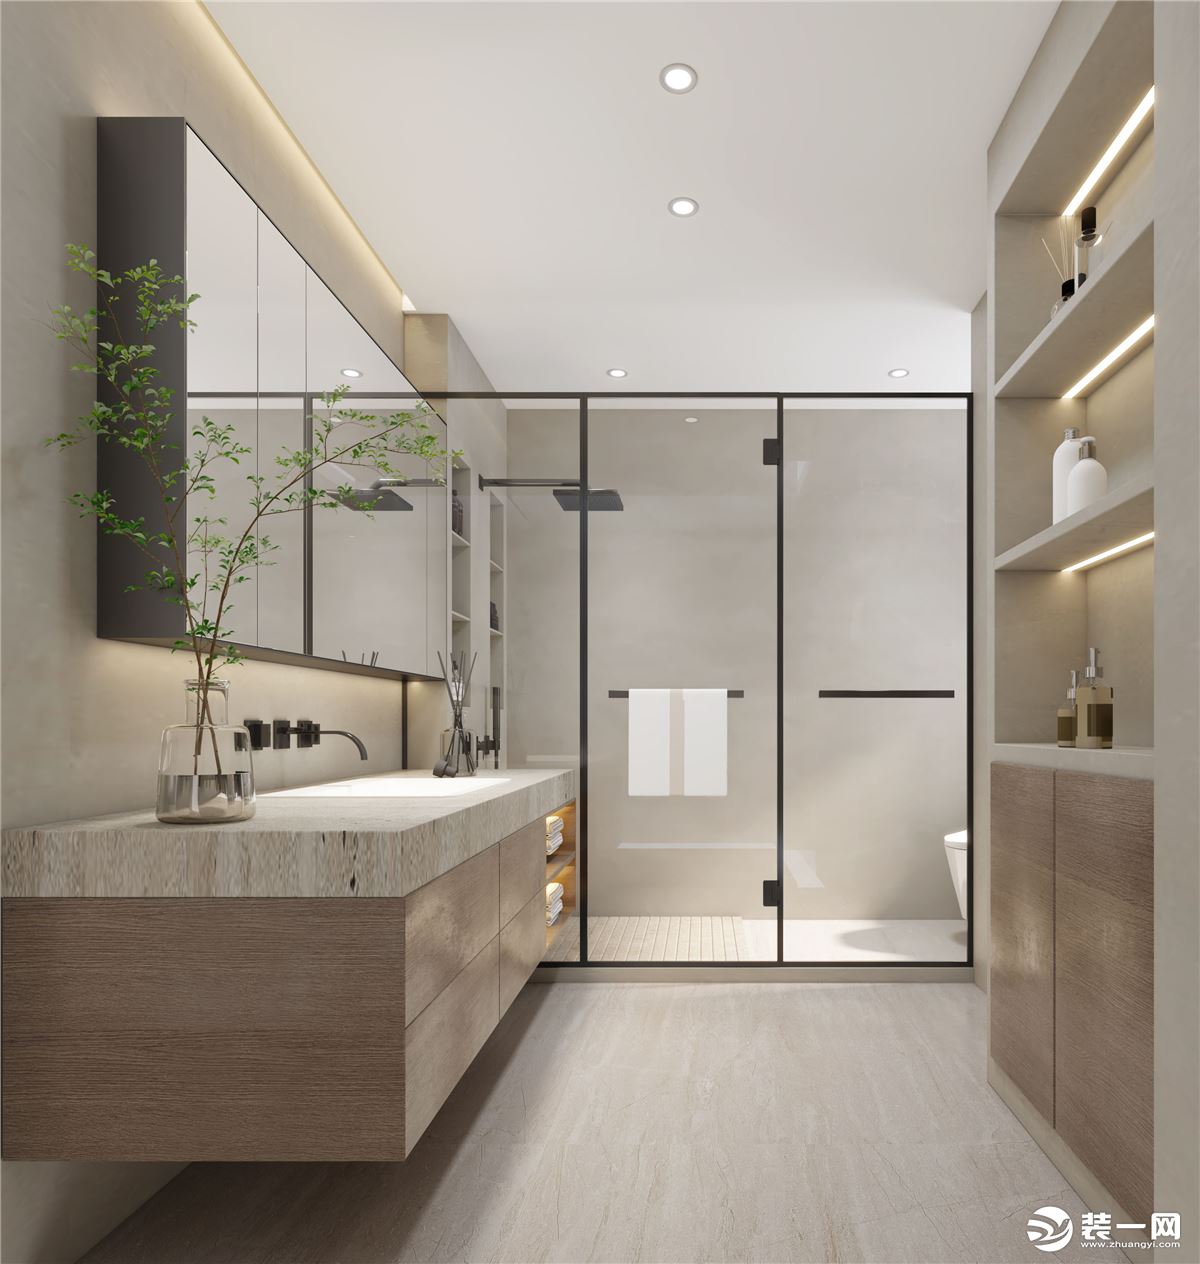 主衛選擇的是標準的三分離設計，裝上原木色浴室柜+鏡柜組合，整個空間無主燈的設計。